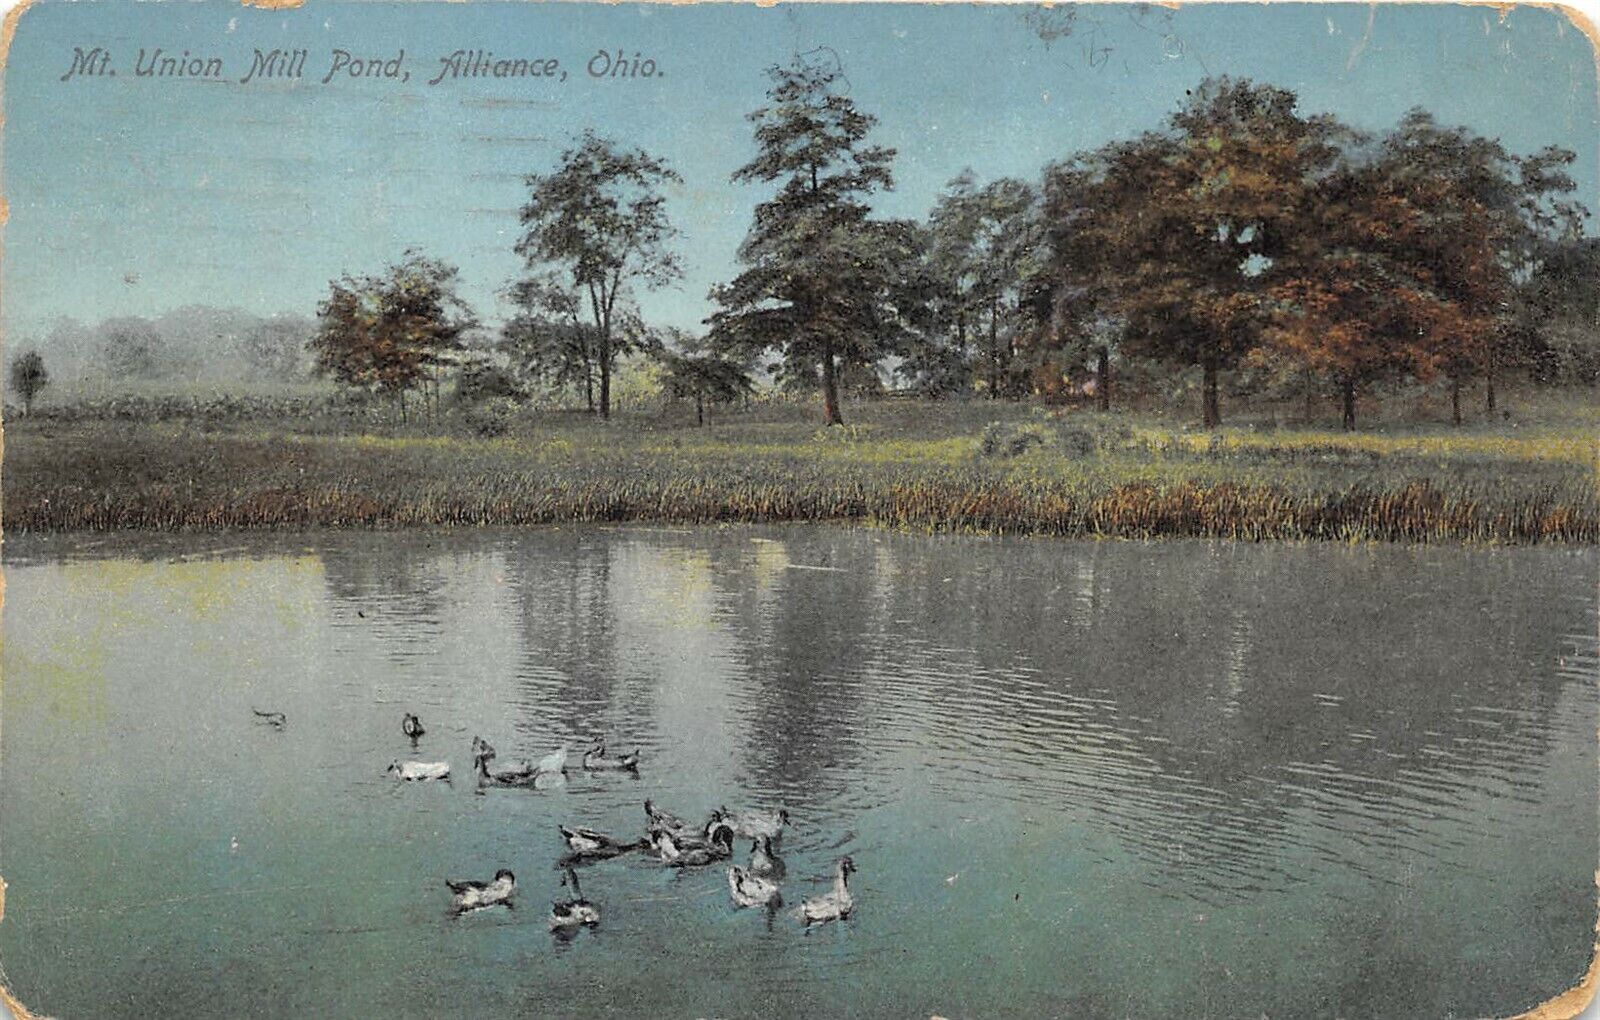 Alliance Ohio 1916 Postcard Mt. Union Mill Pond 